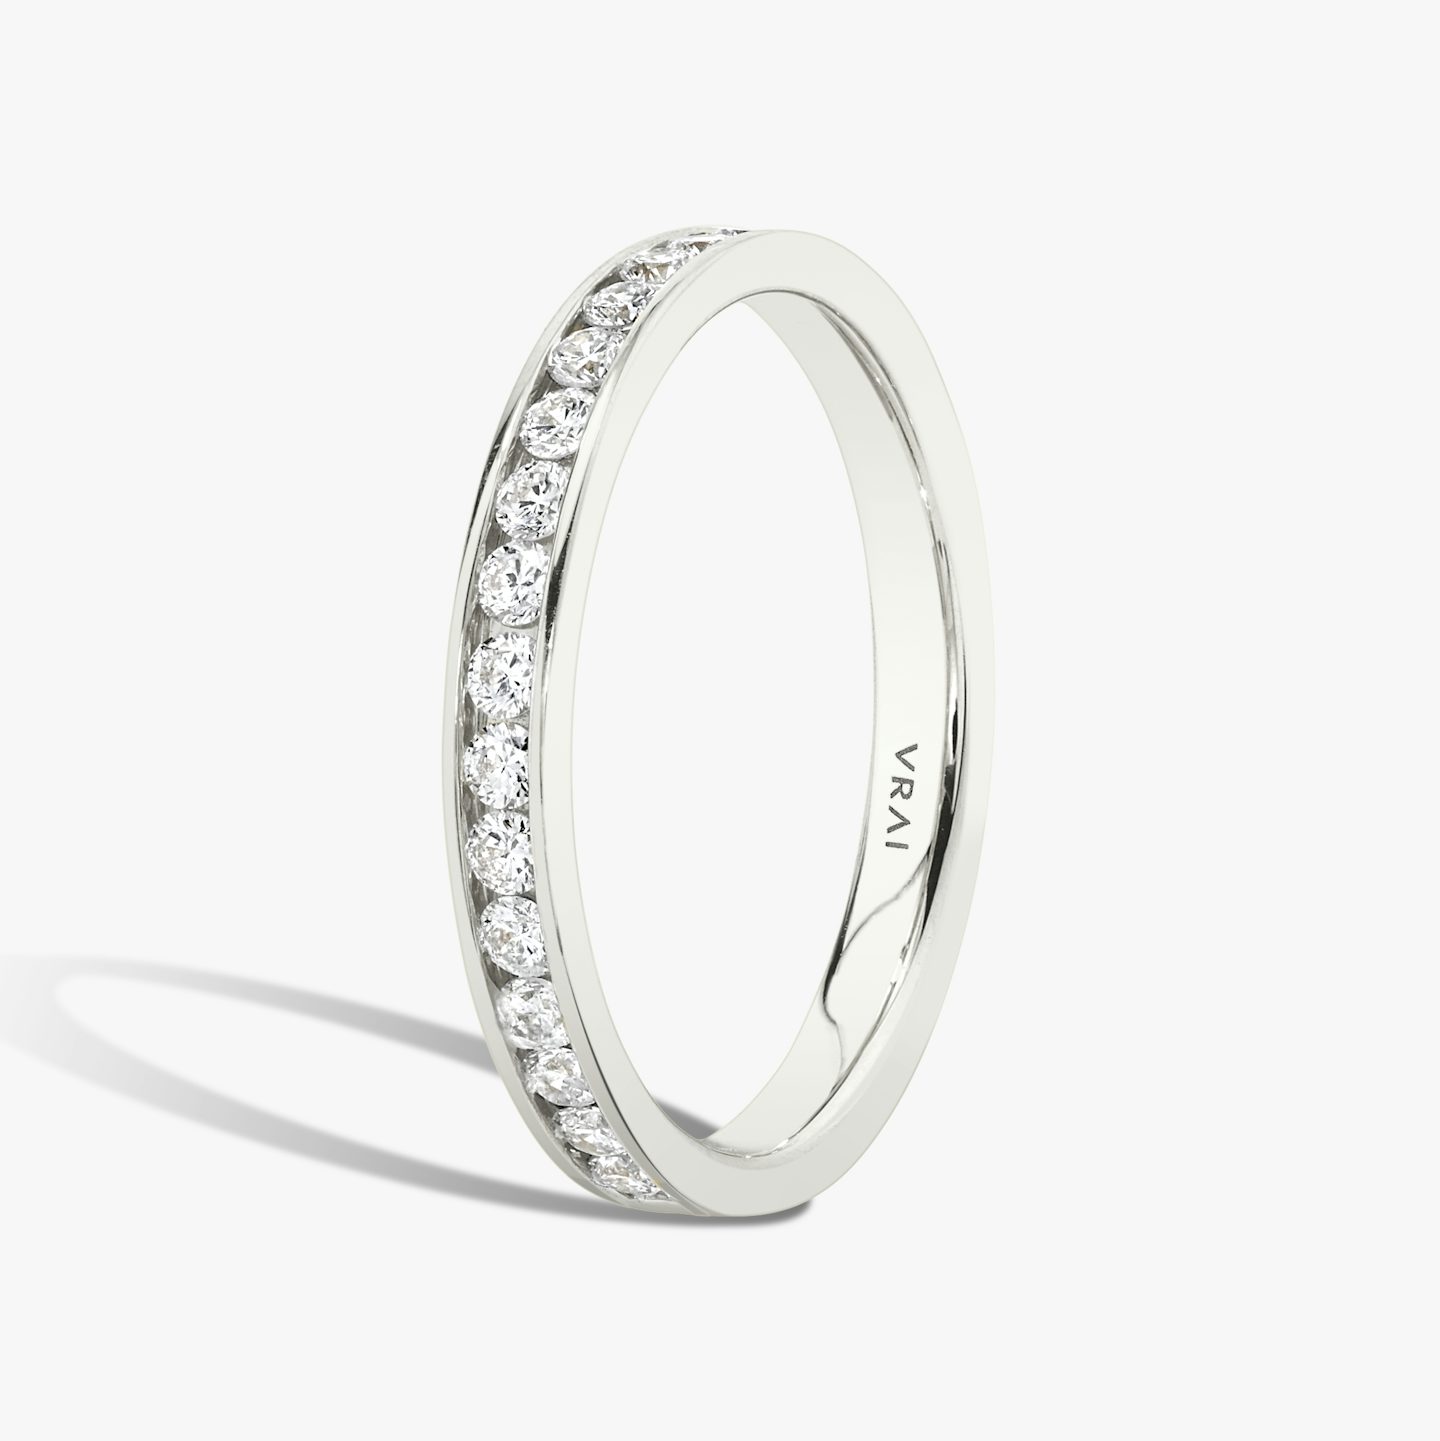 Anillo Devotion | Brillante | 18k | Oro blanco de 18 quilates | Estilo del anillo: Medio círculo de diamantes | Ancho de banda: Grande